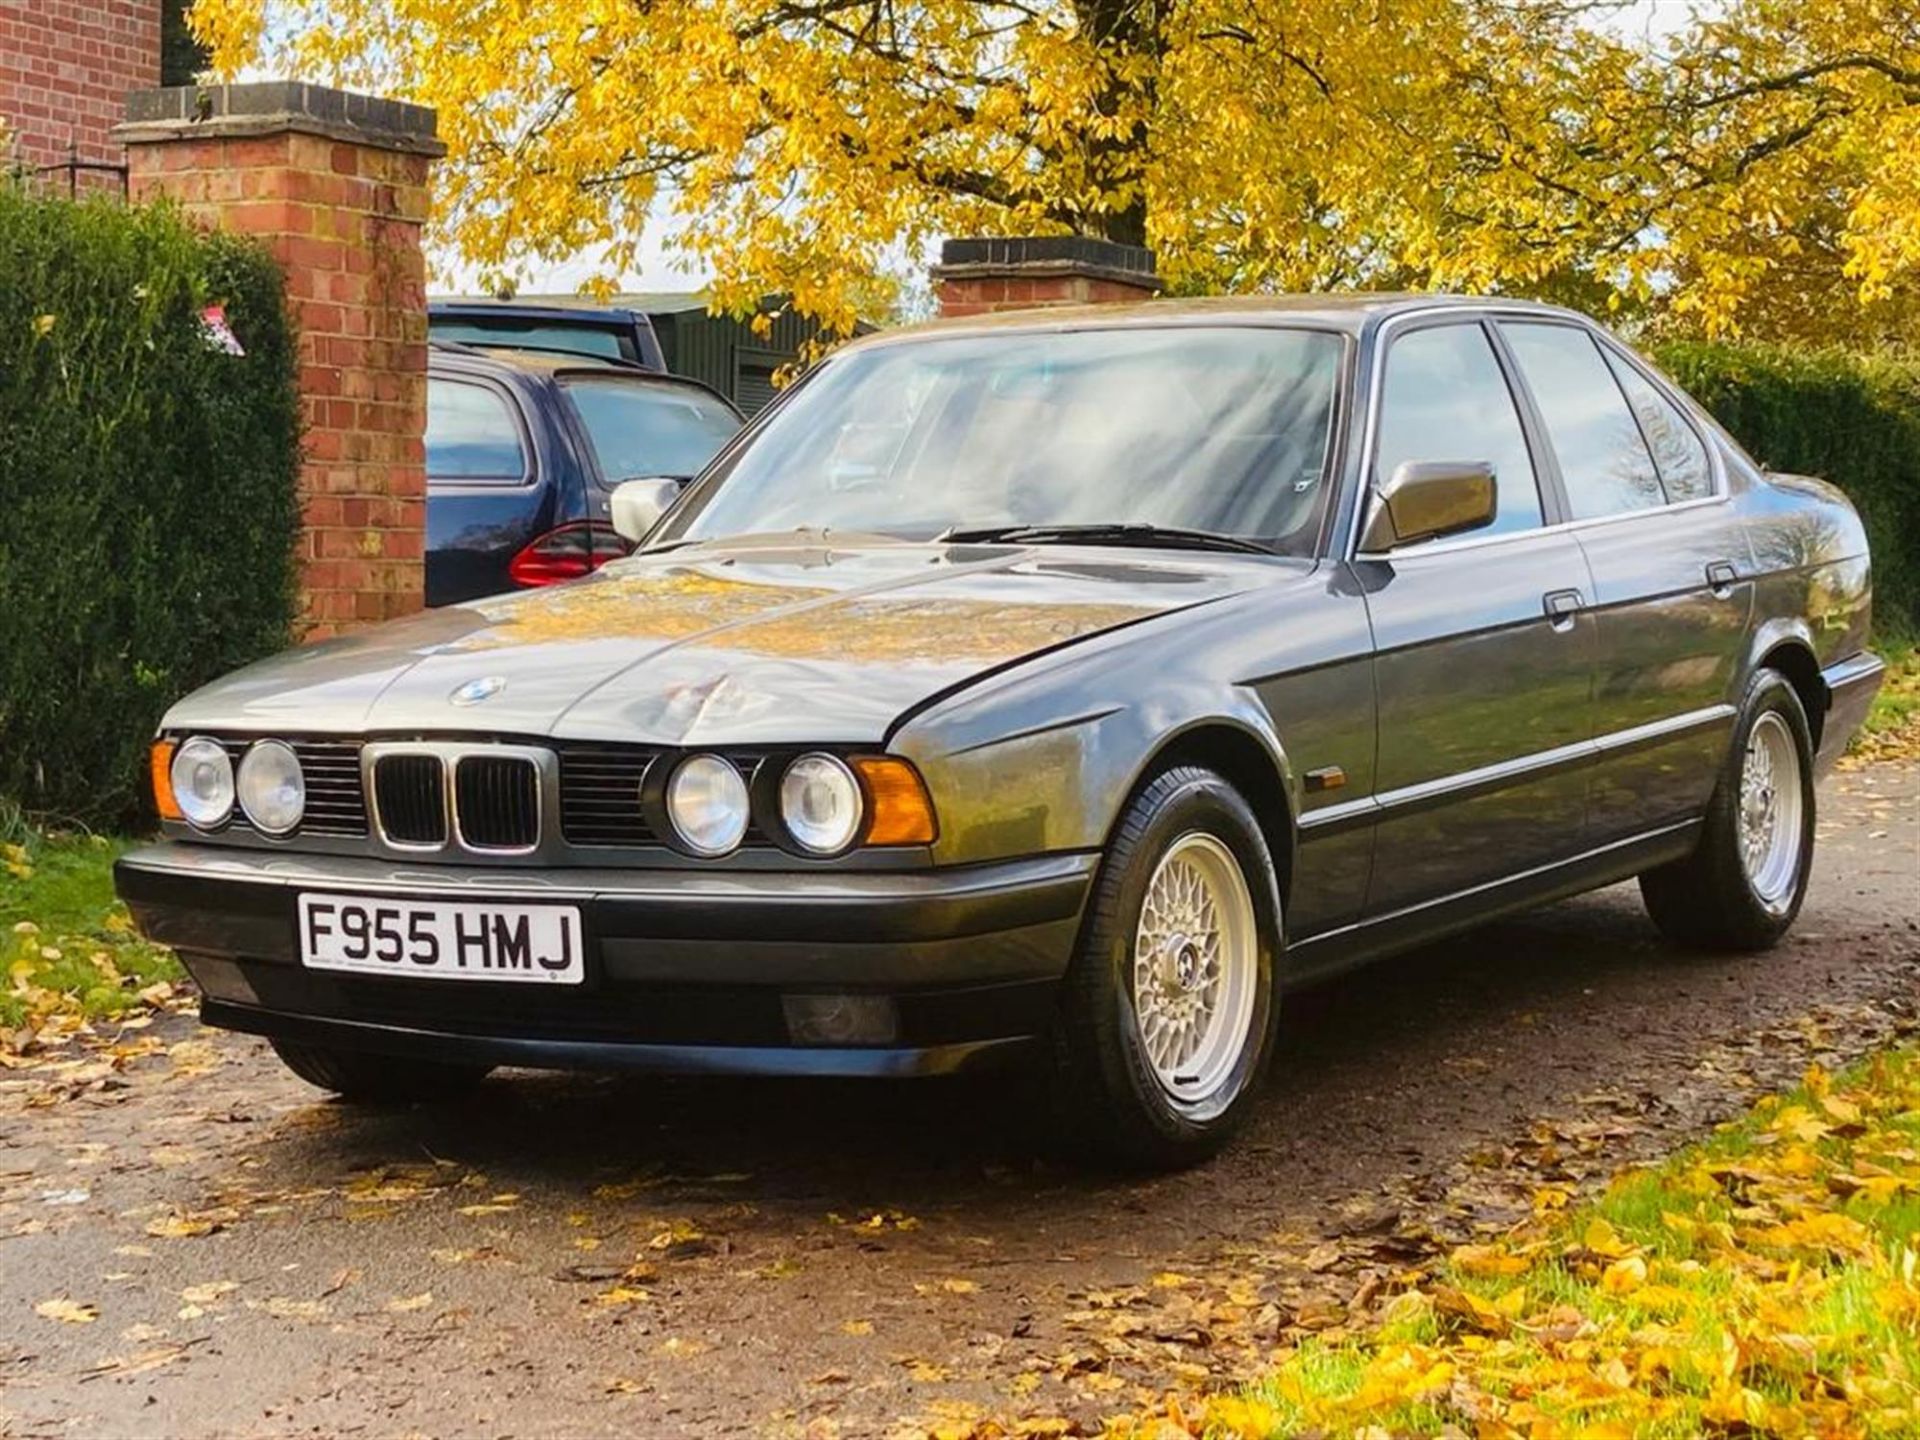 1988 BMW 535i (E34) - Image 7 of 10